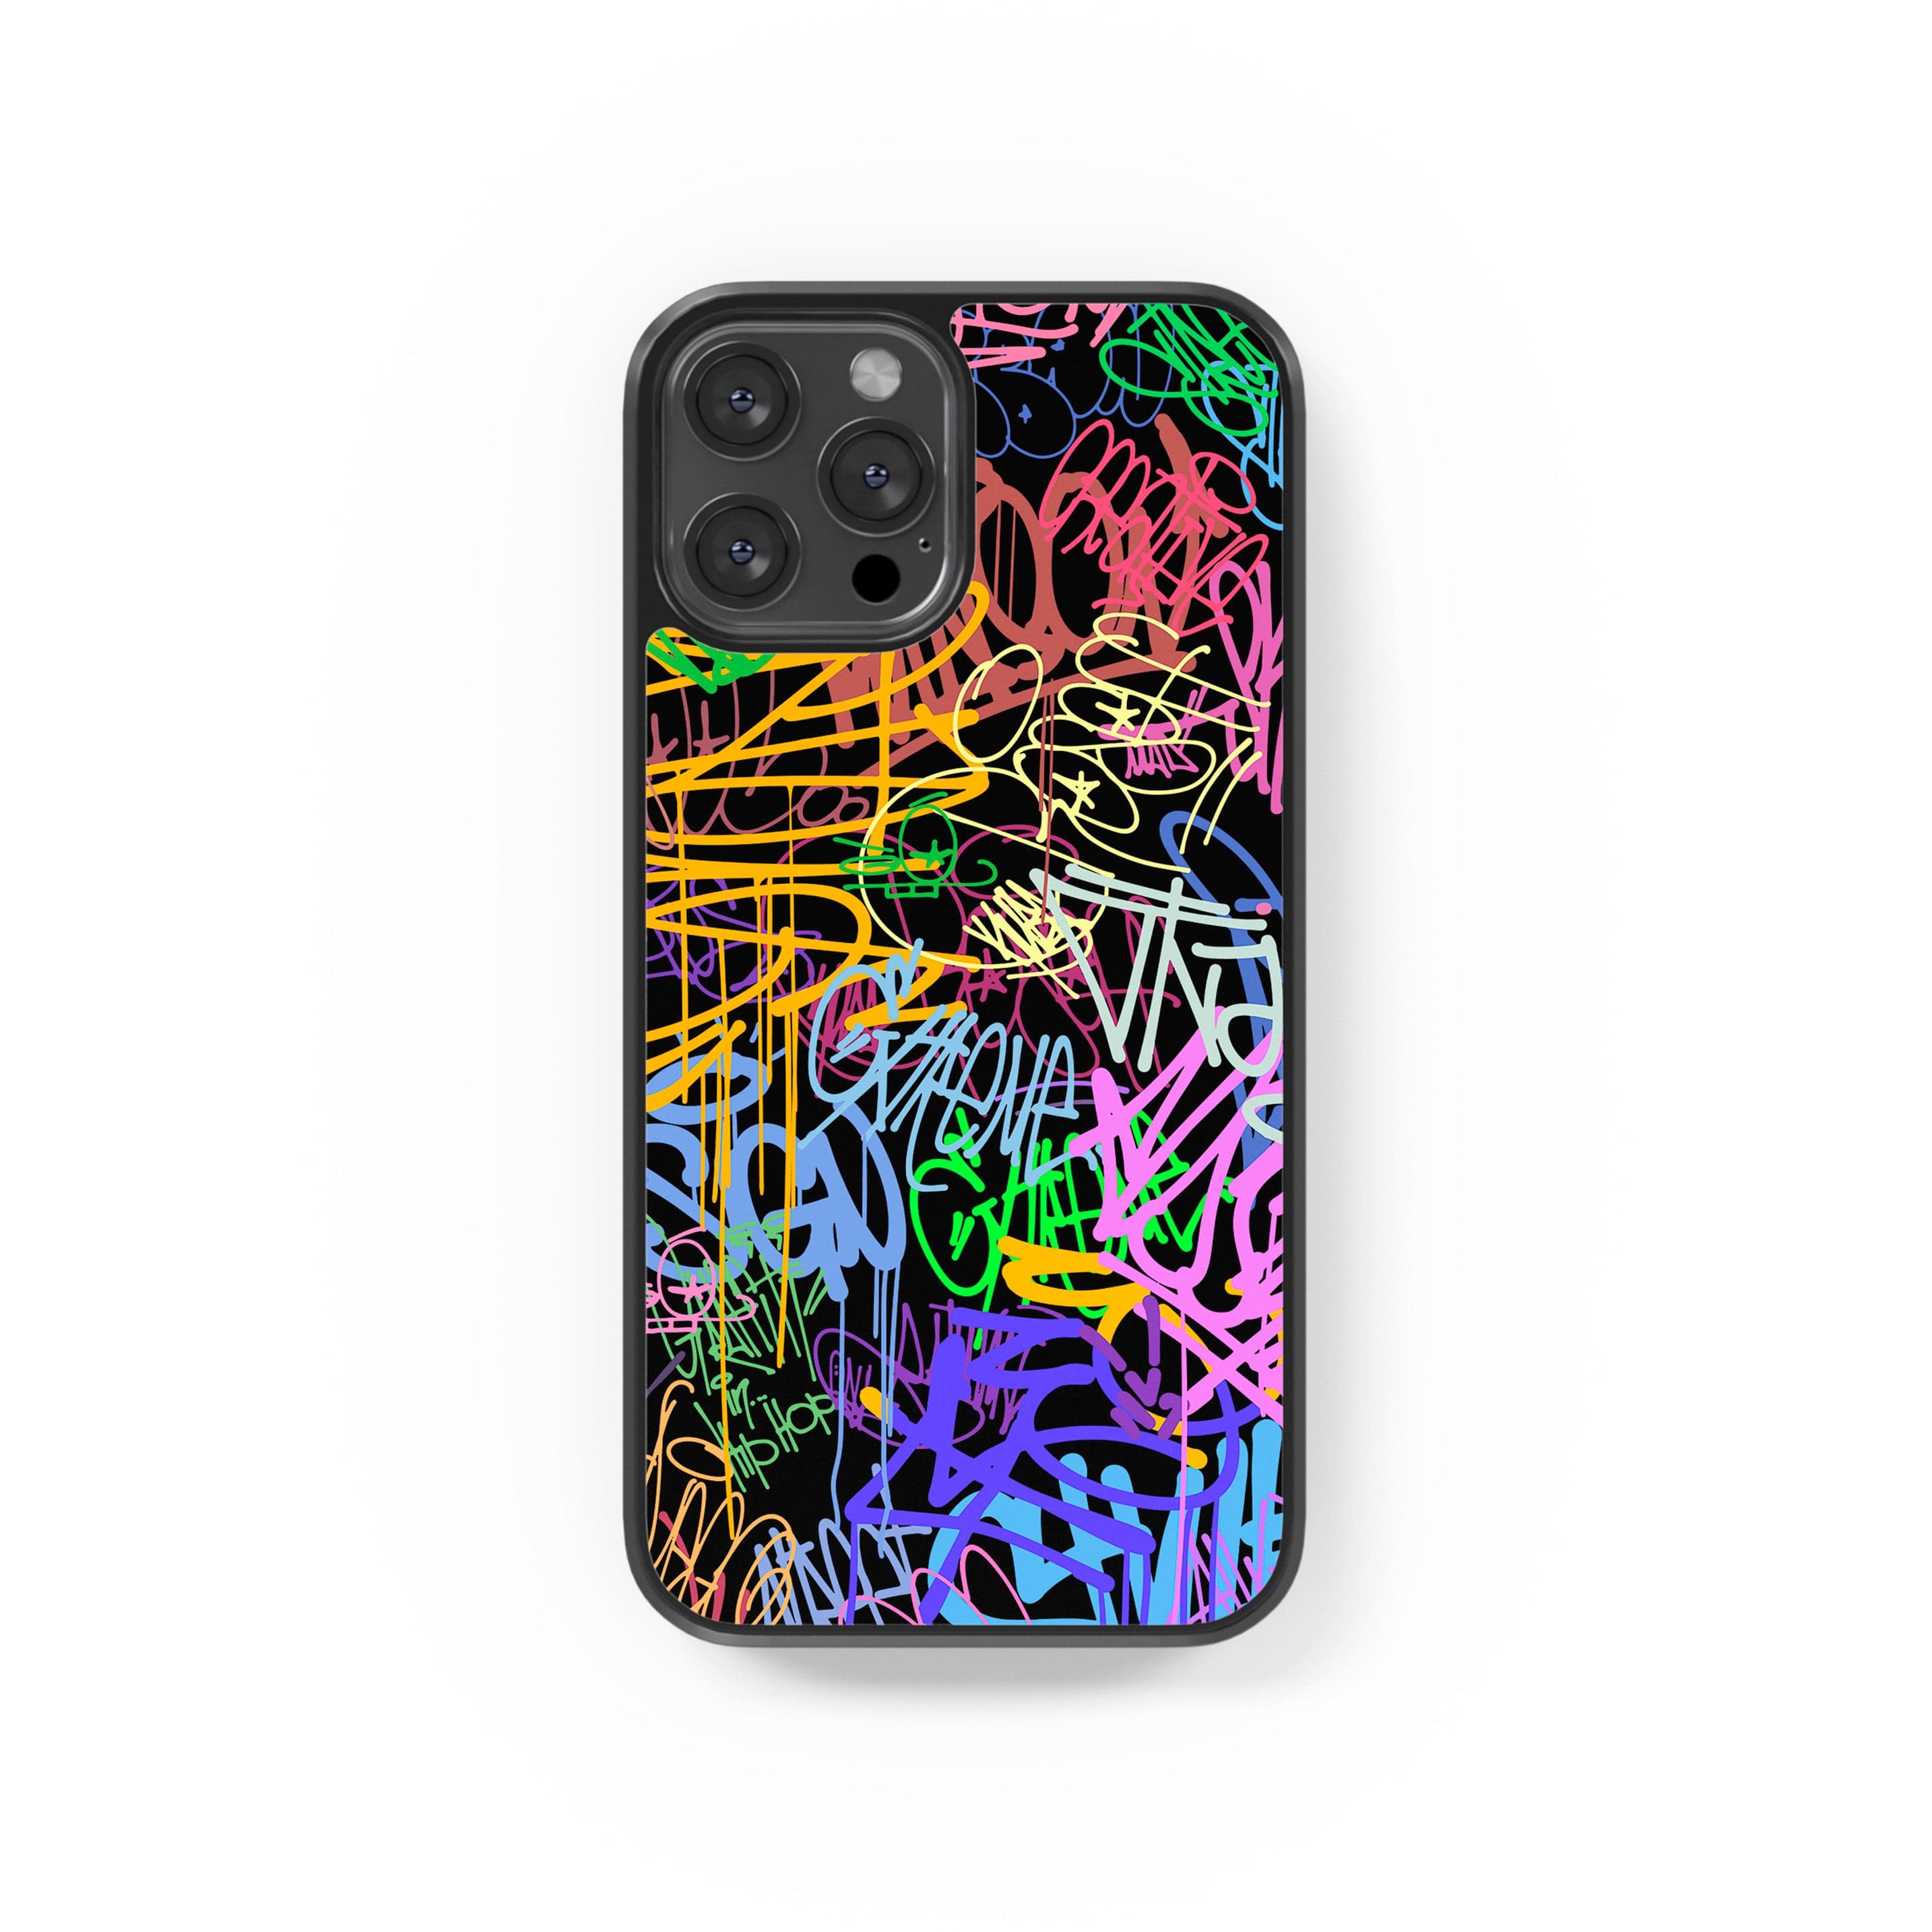 Phone case "Multicolour graffiti 1"